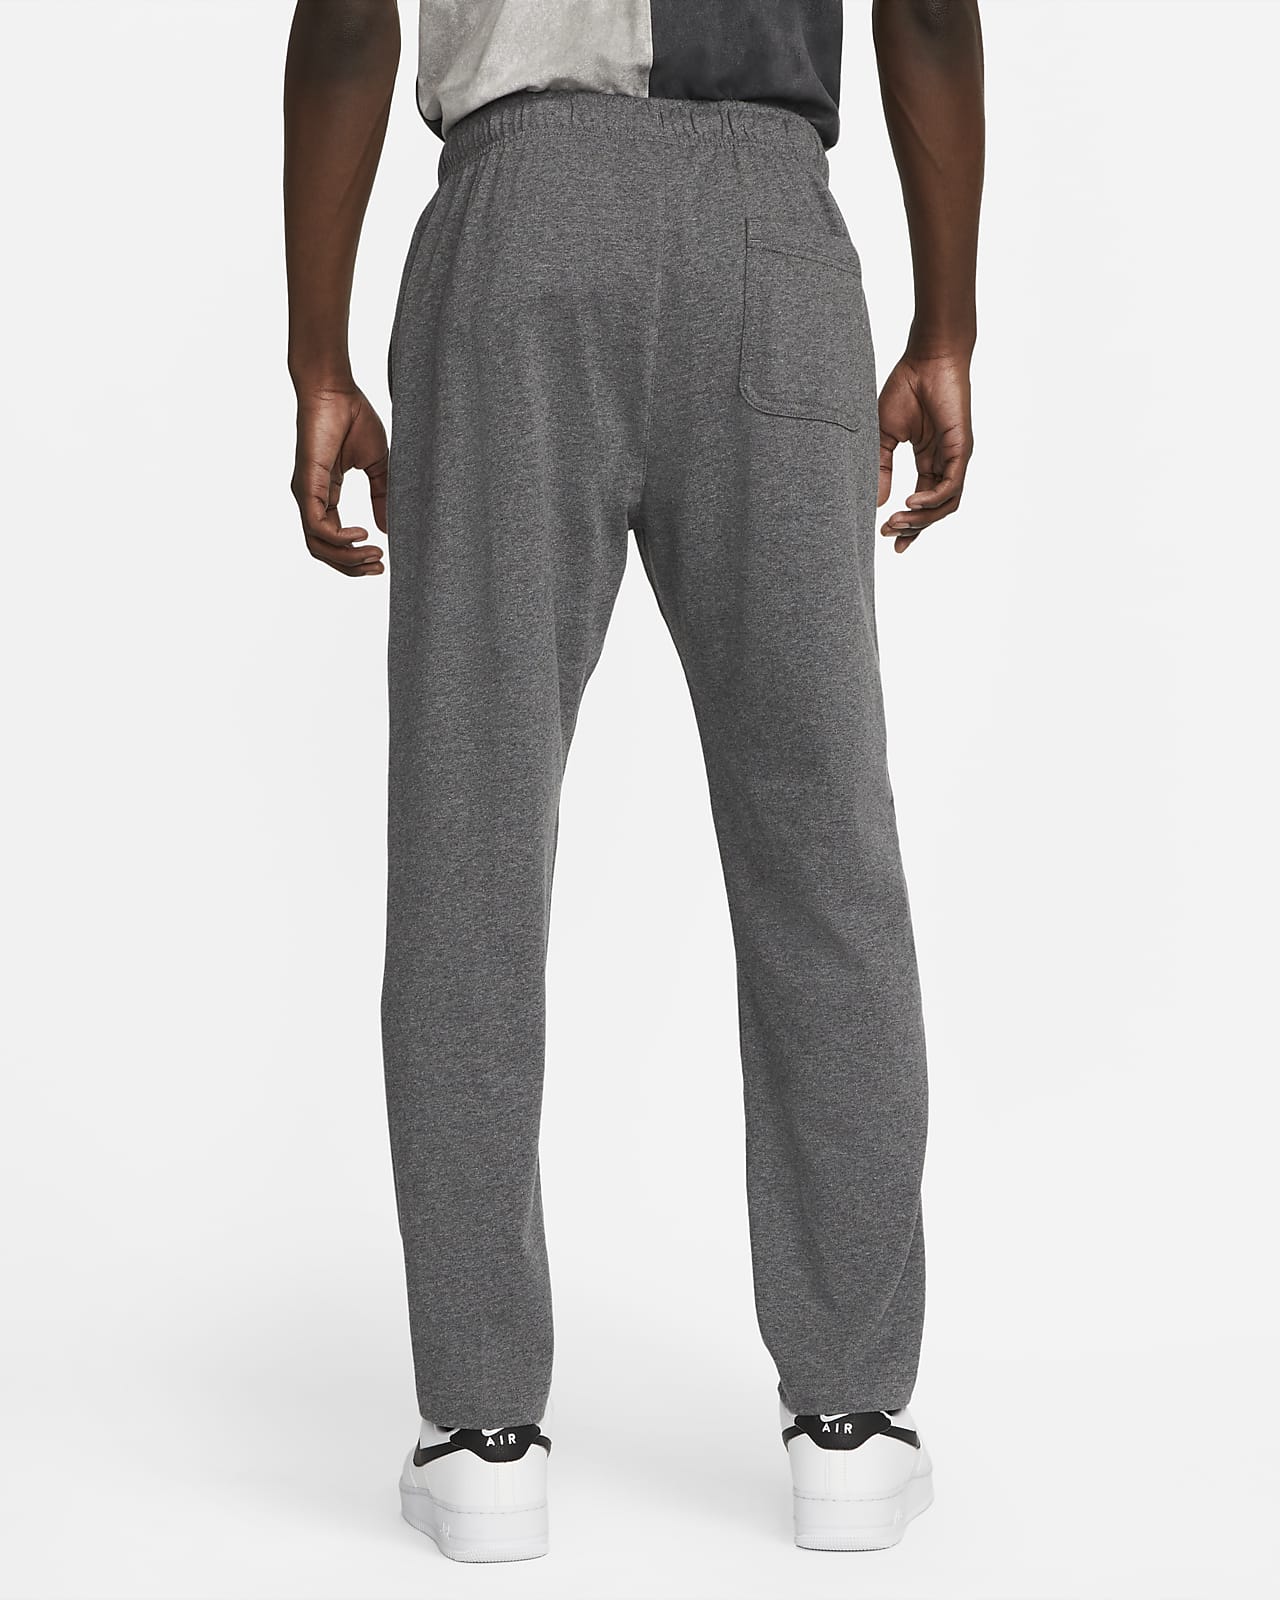 Sportswear Fleece Men's Jersey Pants. Nike.com